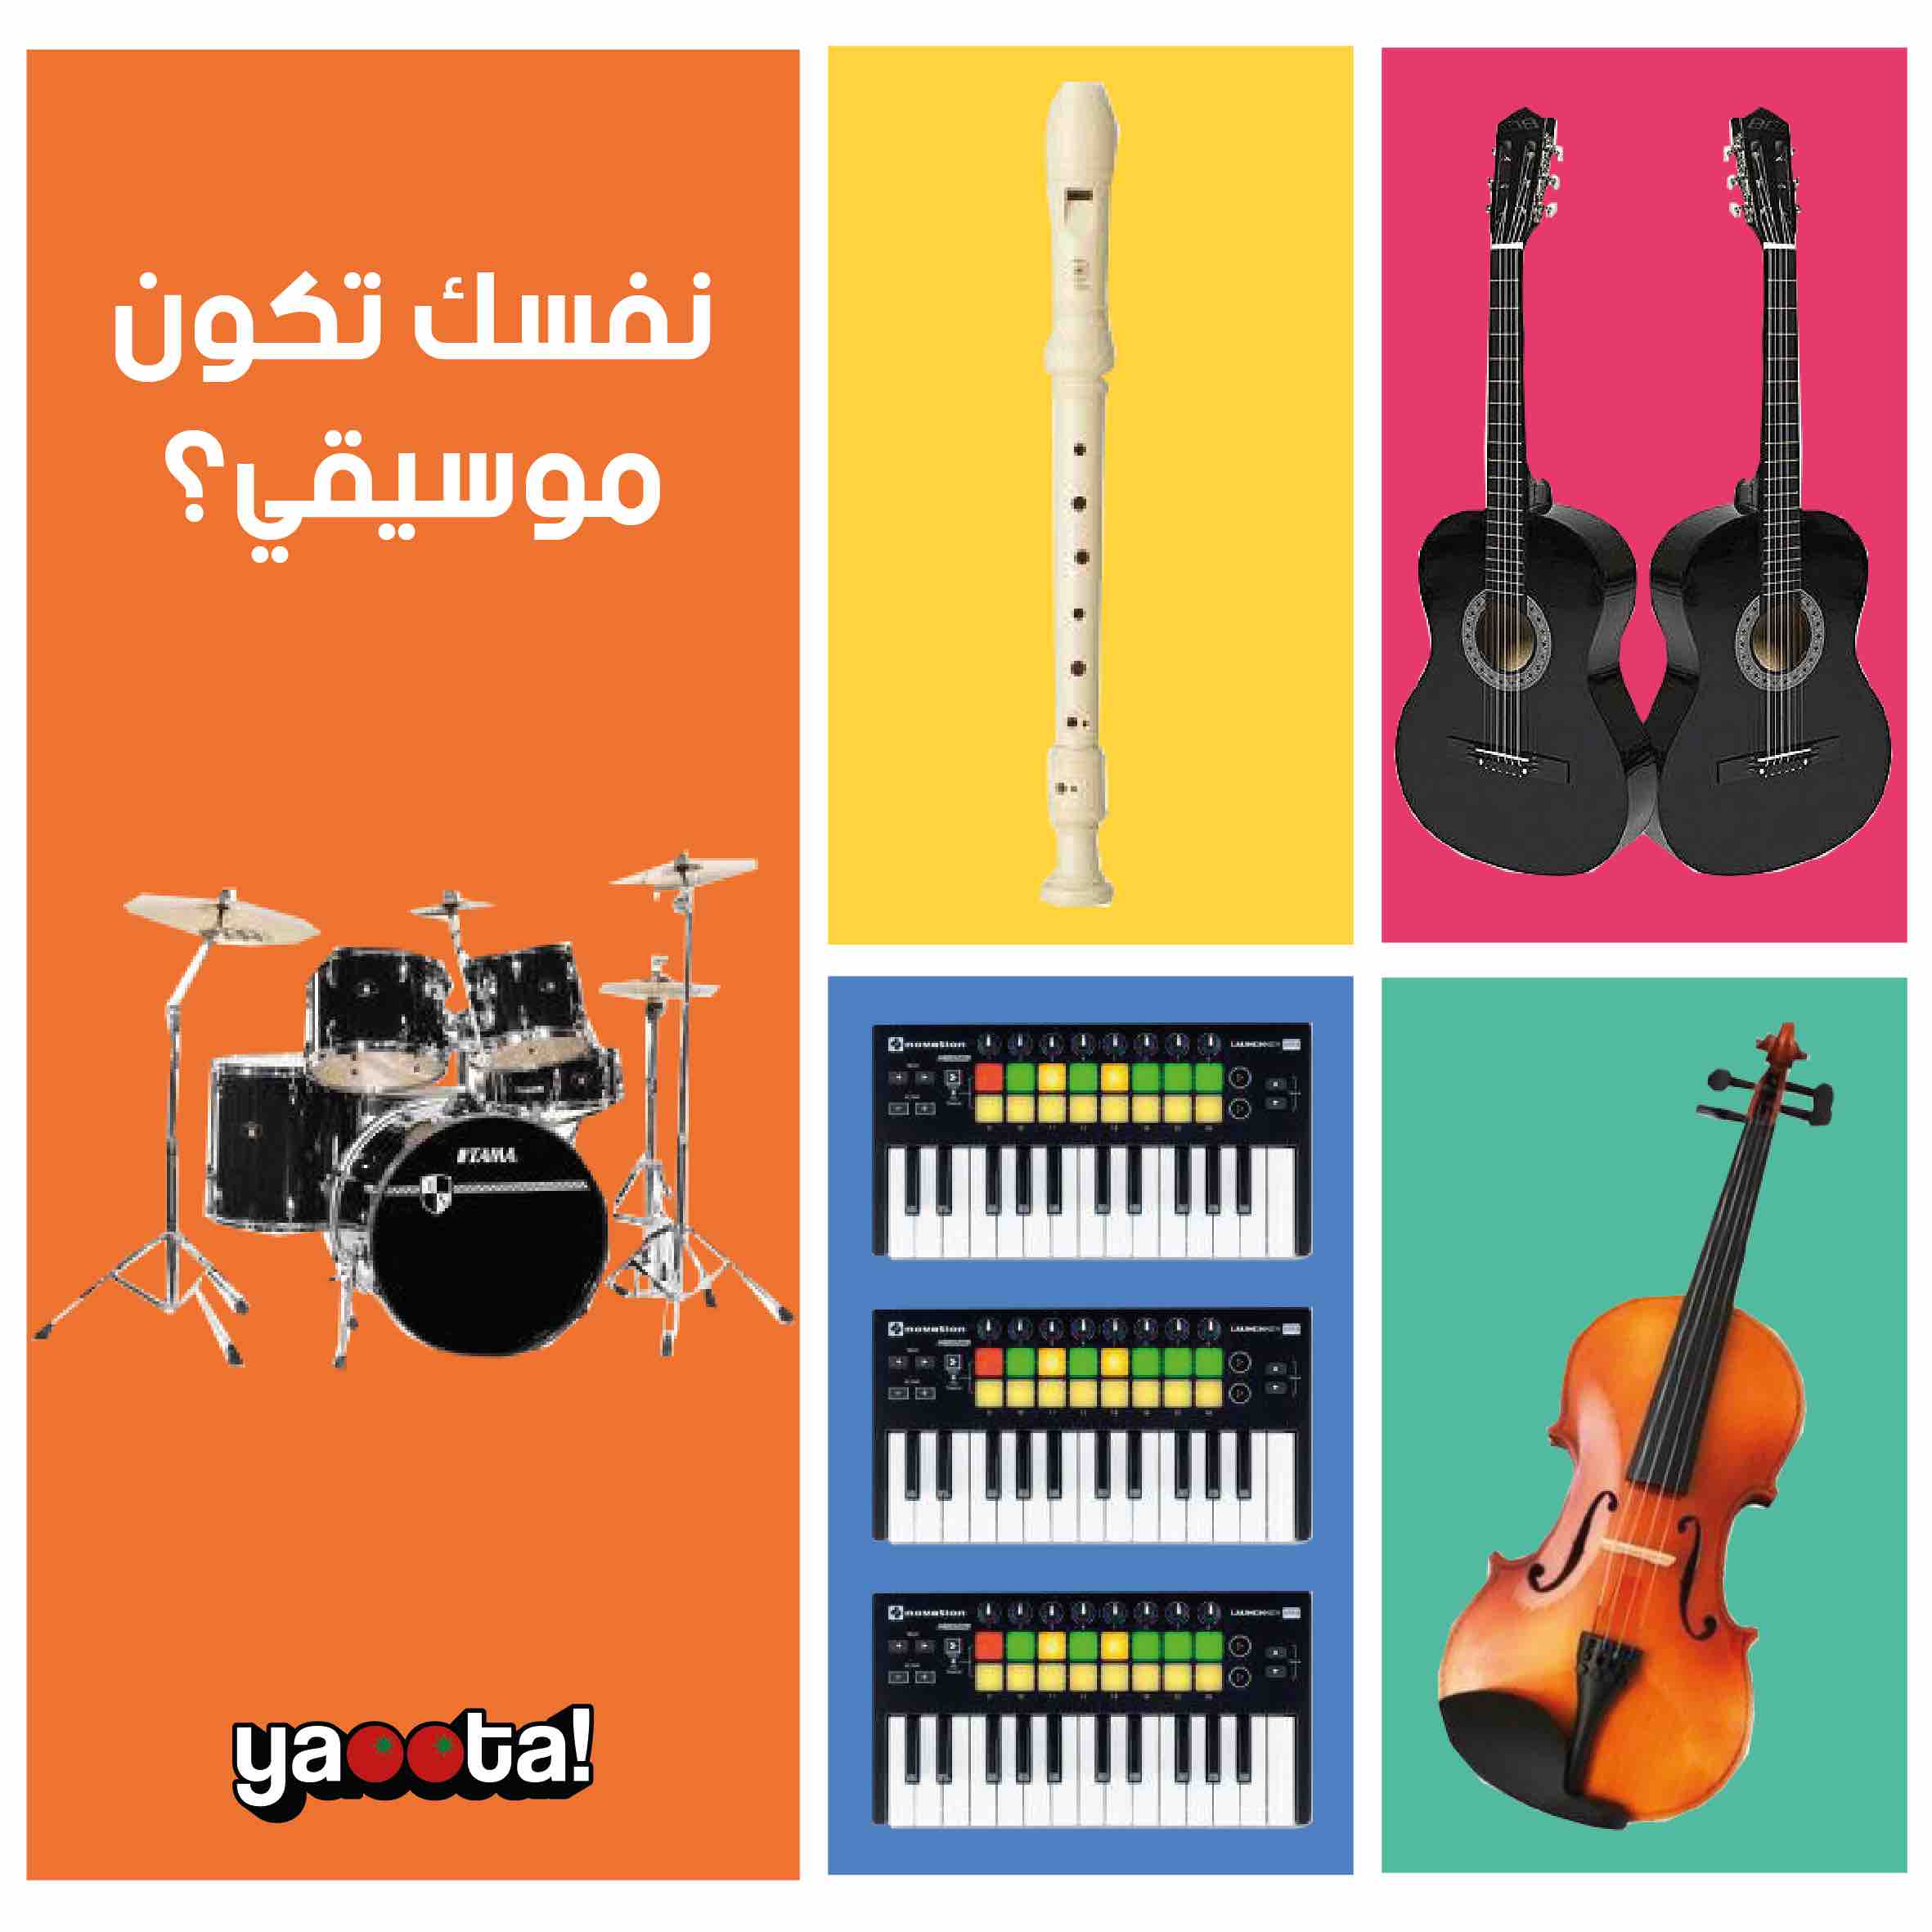 مراجعة ٥ آلات موسيقية لمحبي العزف و نصائح قبل الشراء | مجلة ياقوطةOnline  Shopping Egypt | Yaoota! Magazine